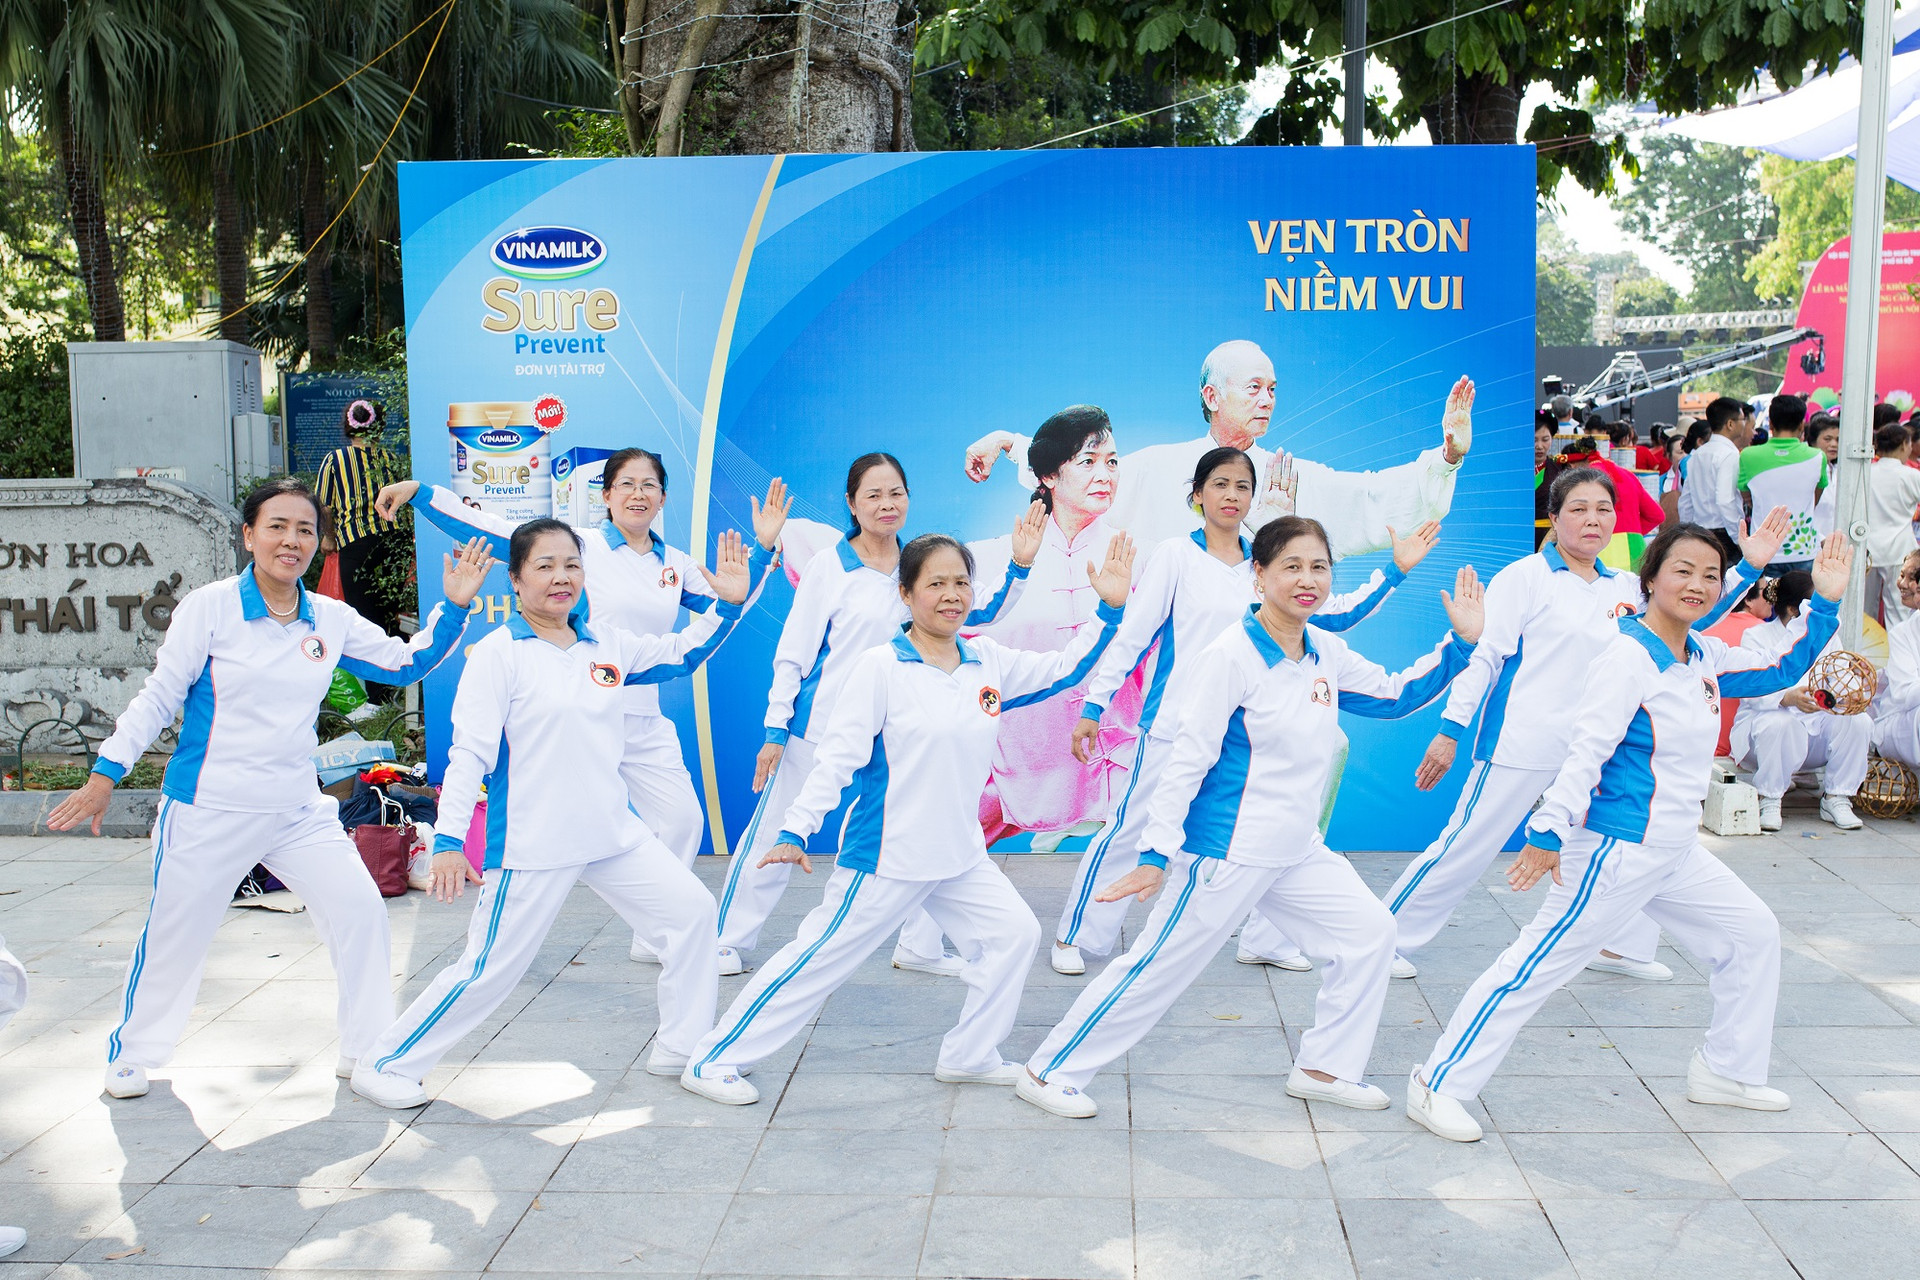 VINAMILK SURE PREVENT đồng hành phong trào rèn luyện sức khỏe người cao tuổi tại TP. Hà Nội.